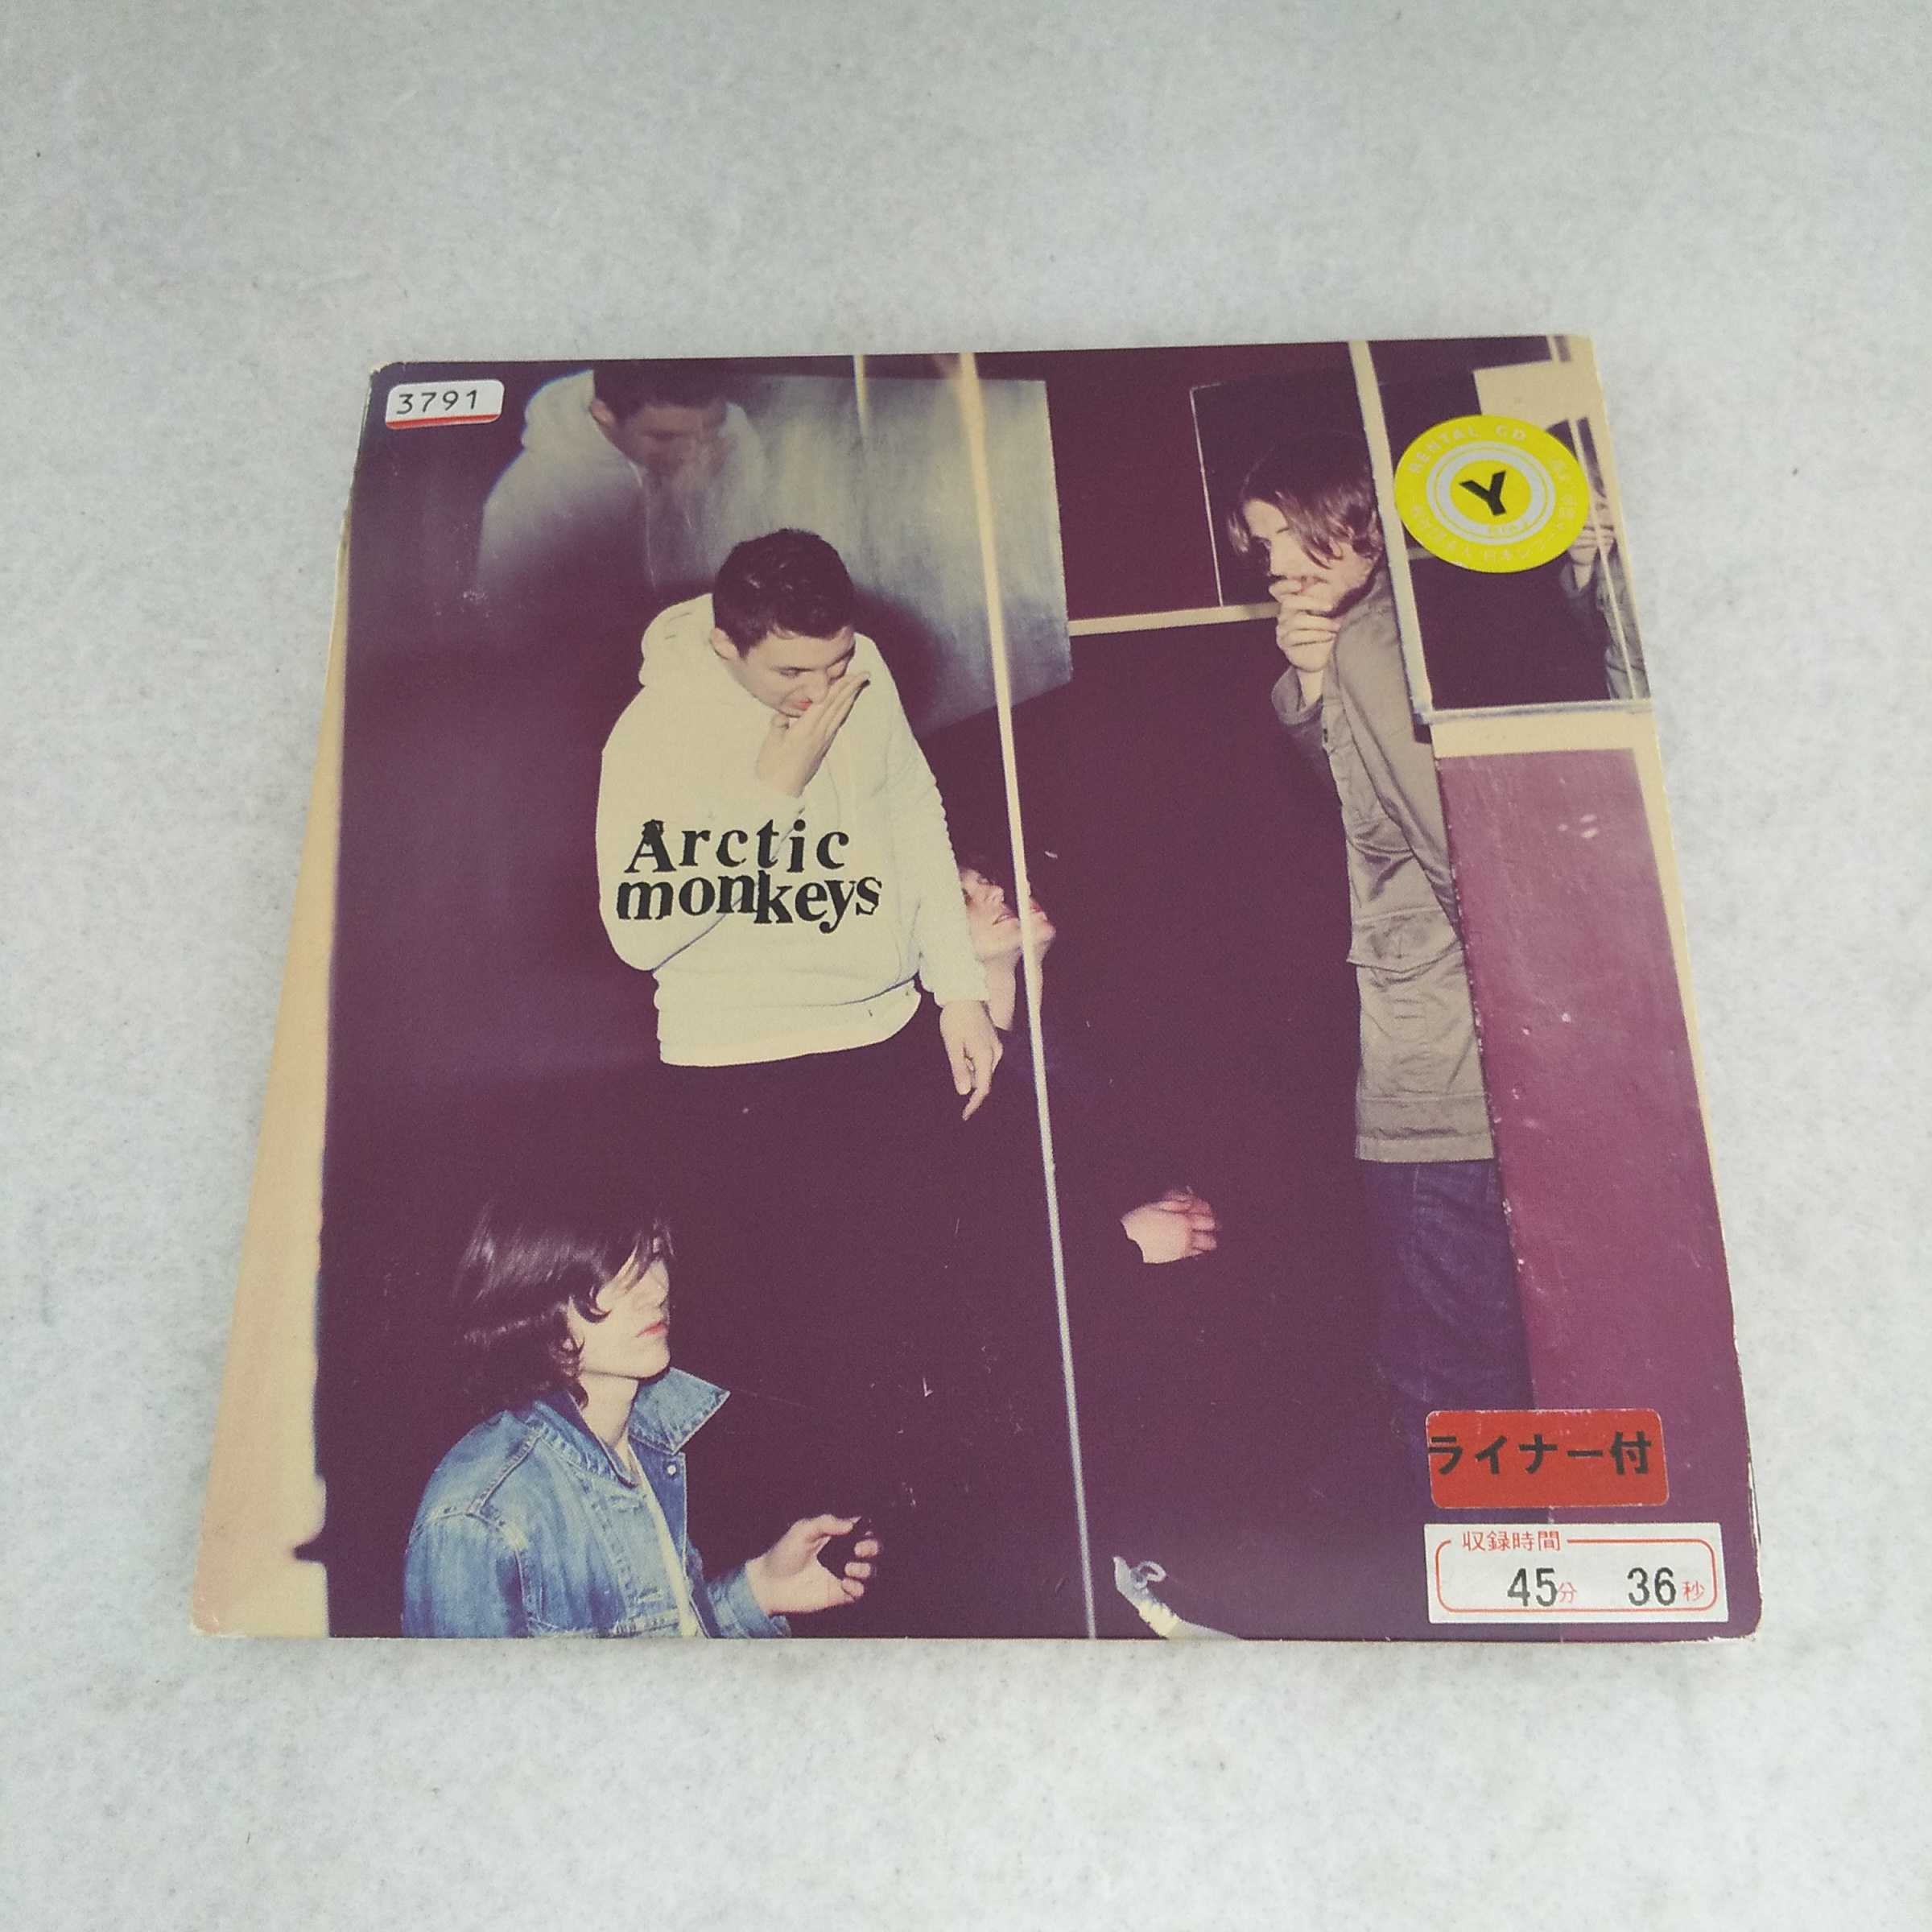 AC12331 yÁz yCDz Humbug/Arctic Monkeys